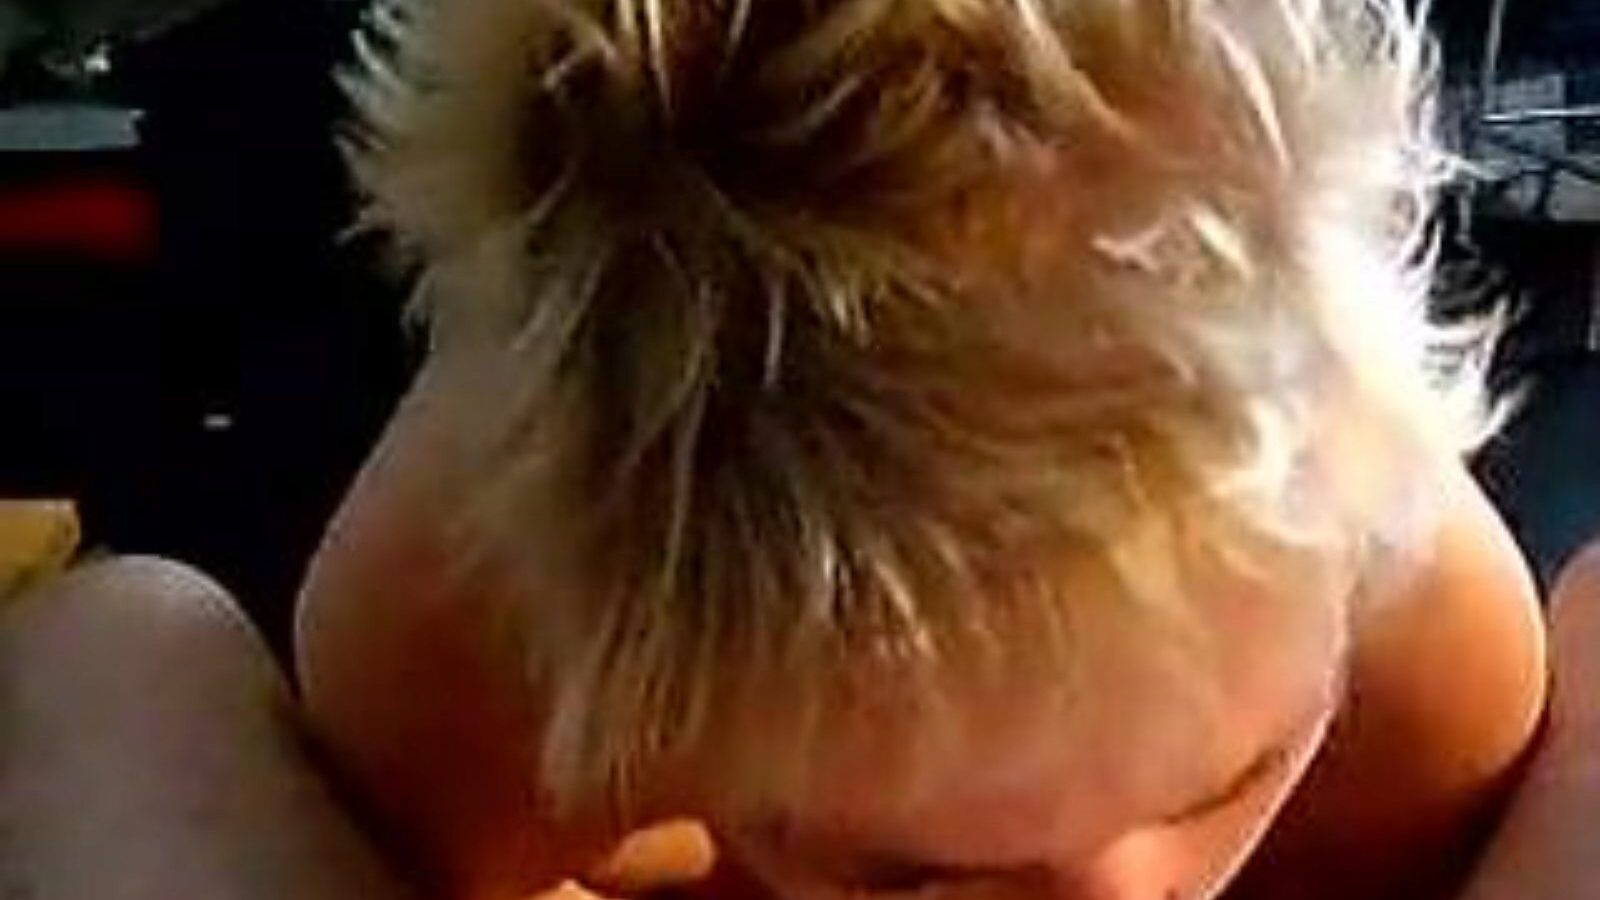 leuke dame: kotitekoinen ja vanha tyttö porno video a6 - xhamster katsella leuke dame putki fuckfest-elokuva ilmaiseksi xhamsterissa, kuumimpien hollantilaisten kotitekoisten, vanhojen tyttöjen ja imevien pornografisten leikkikokoelmien kanssa